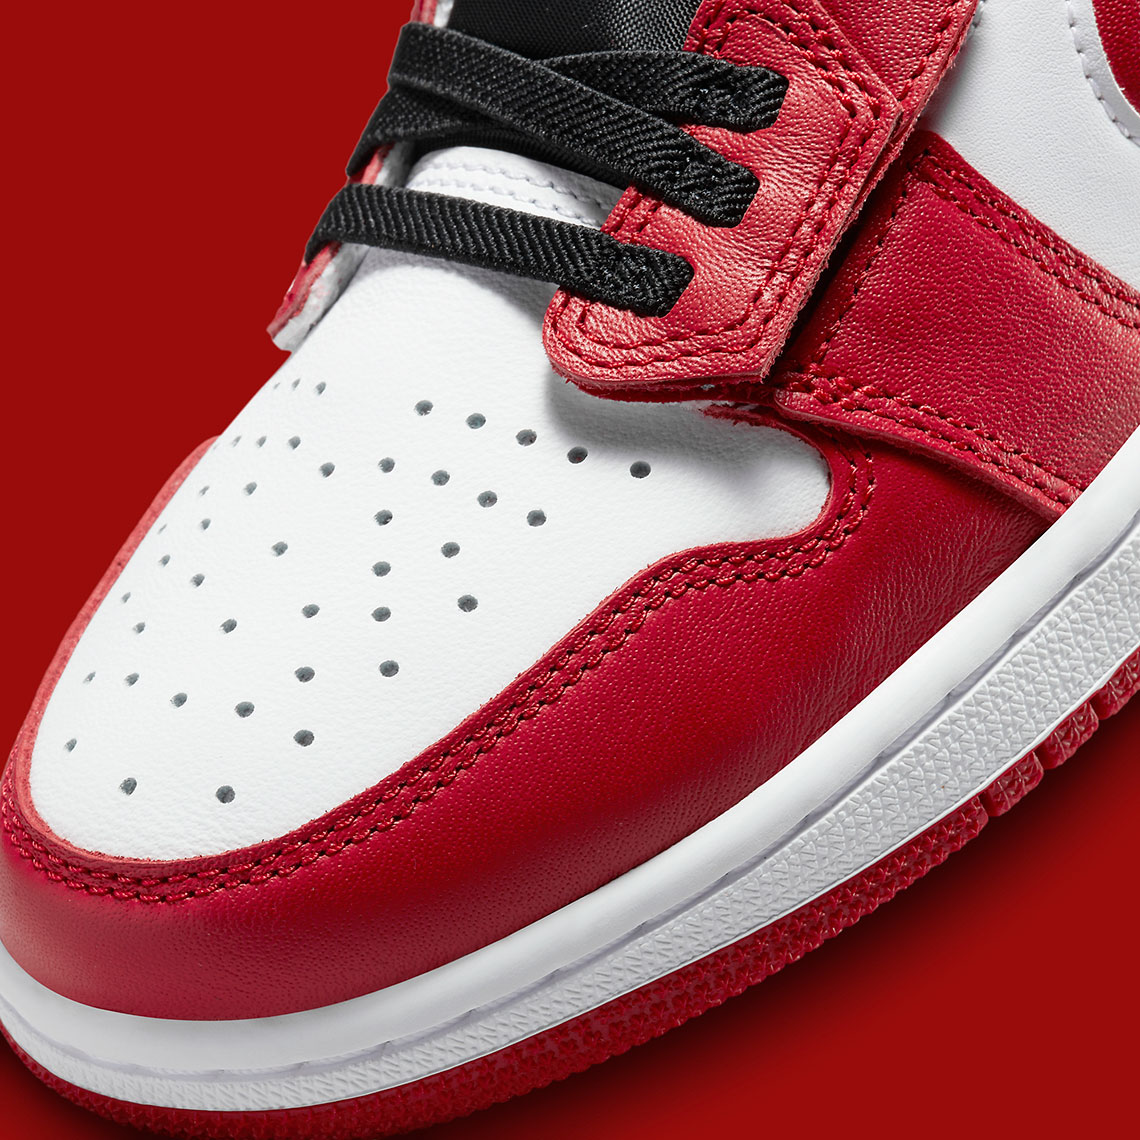 Bambas Nike Air Jordan 1 Low Rojas Sneakers Unity Low Flyease Red Black Release Date 4